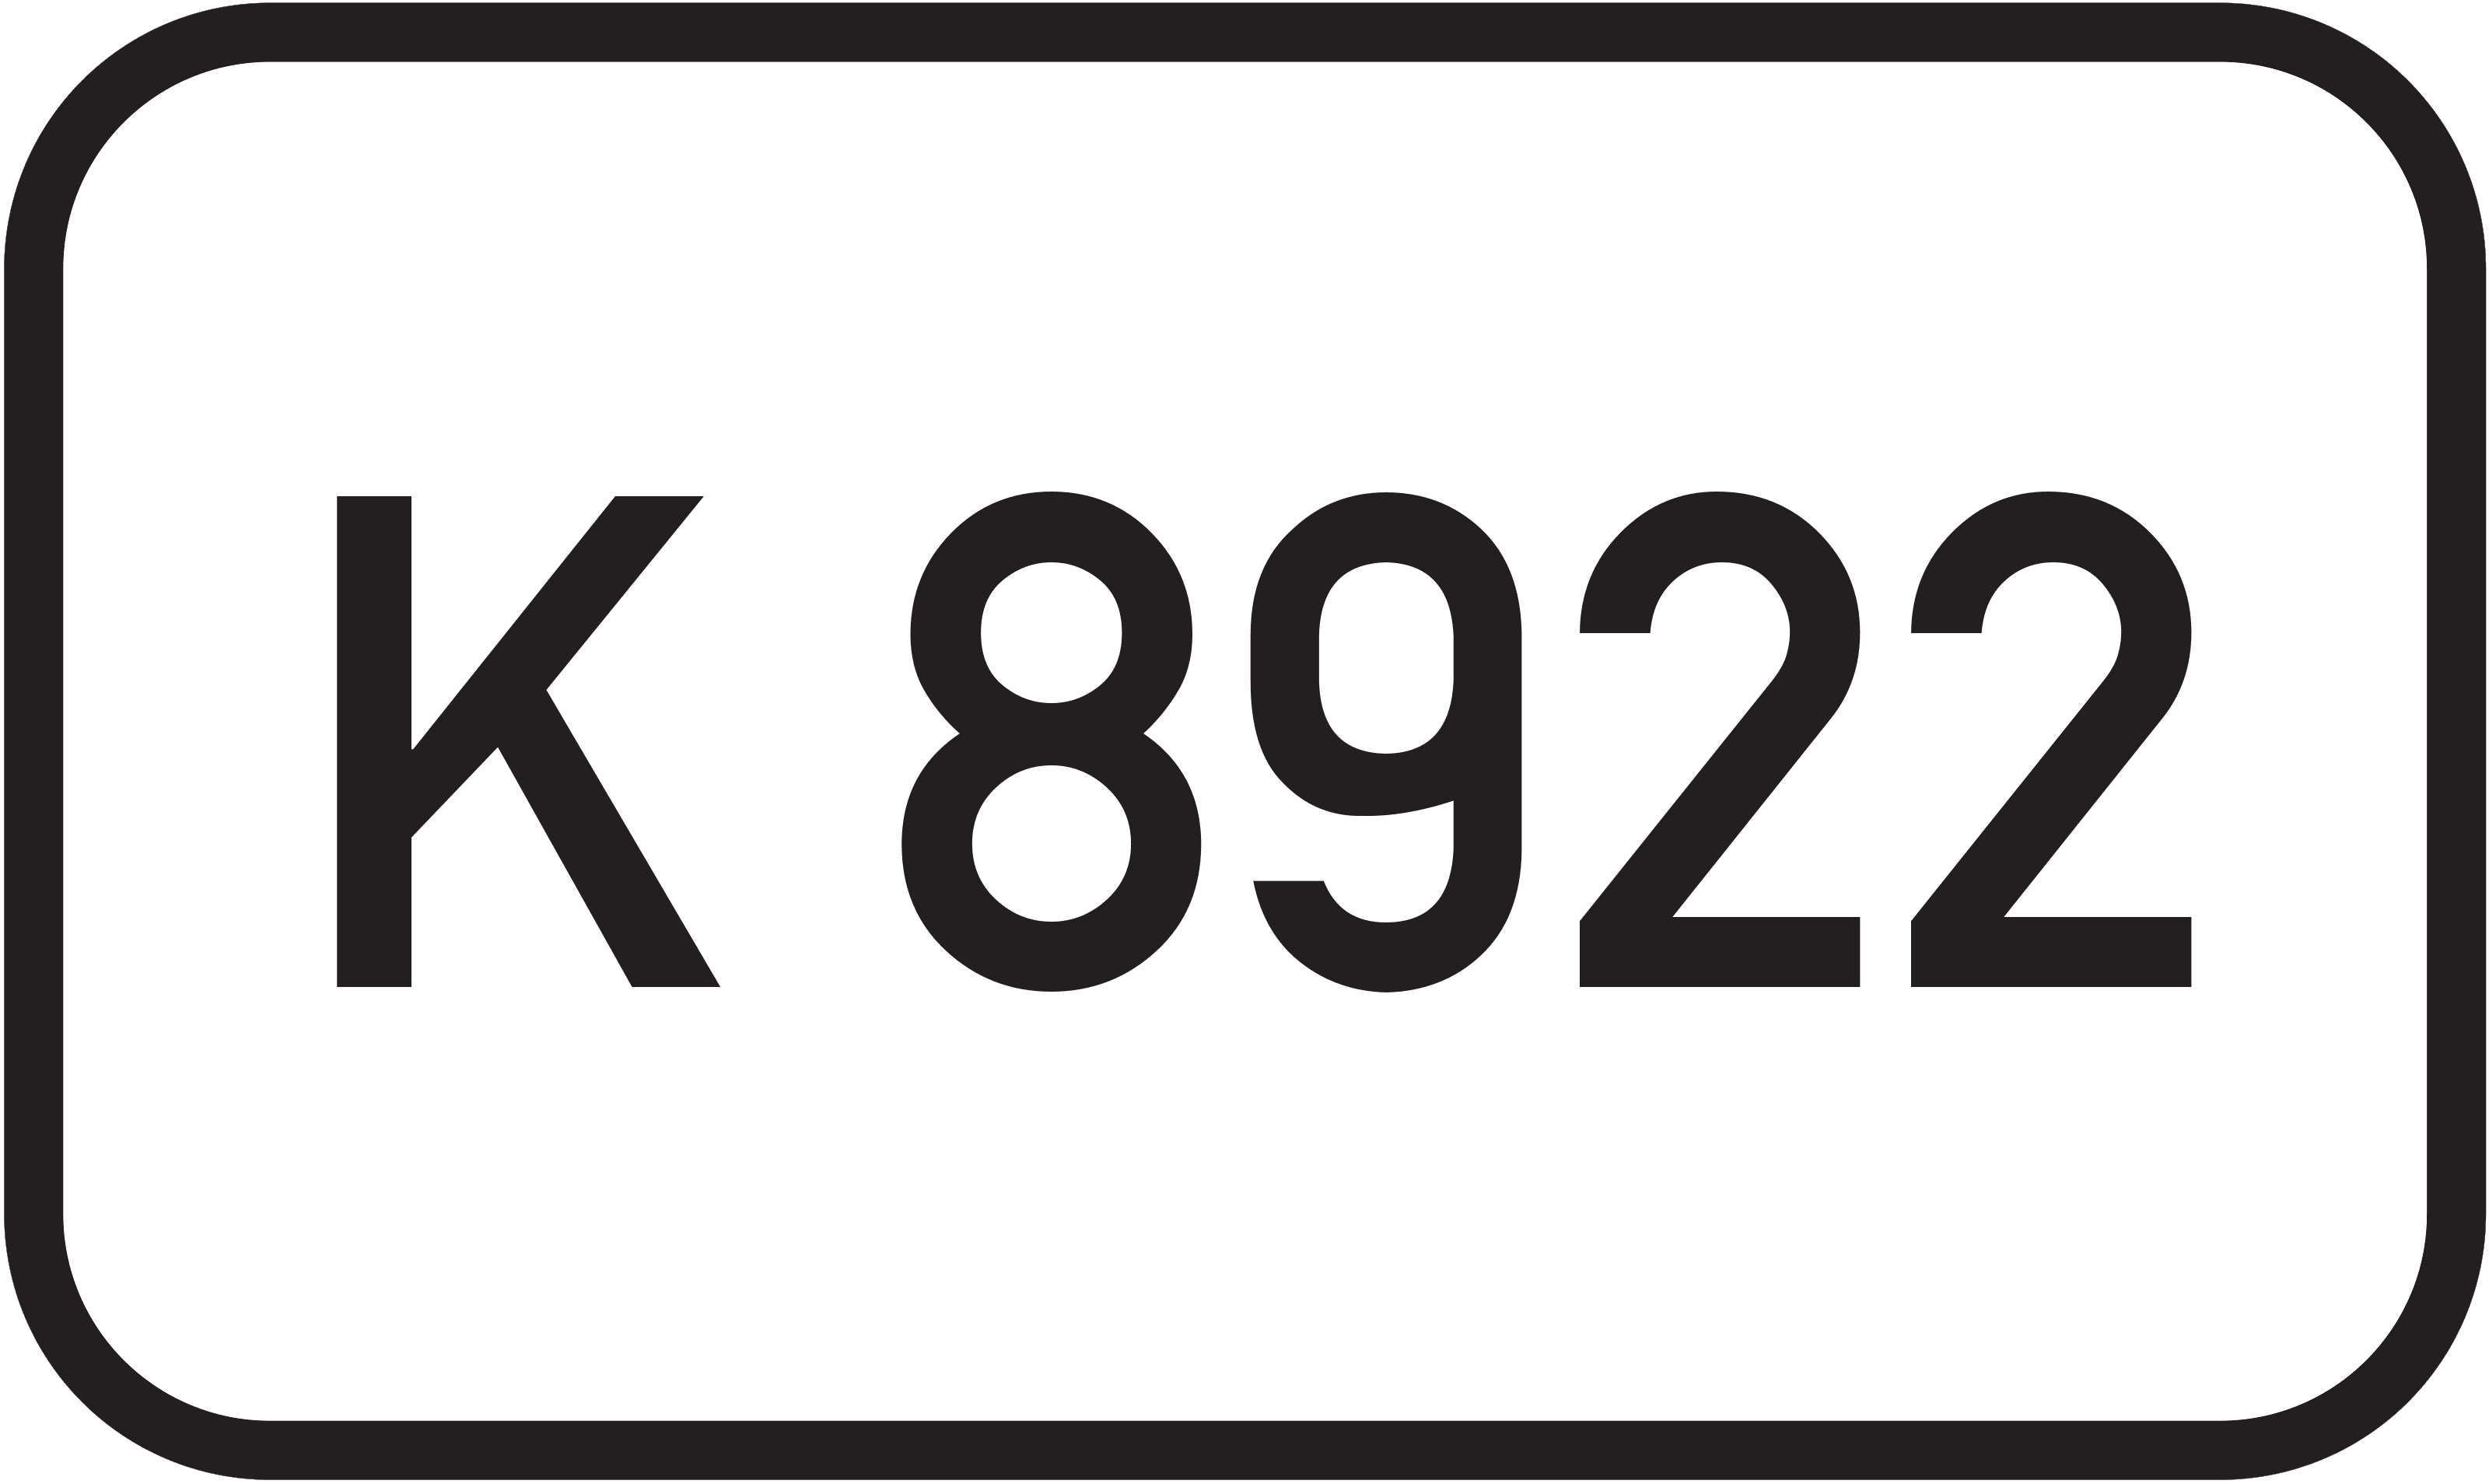 Bundesstraße K 8922